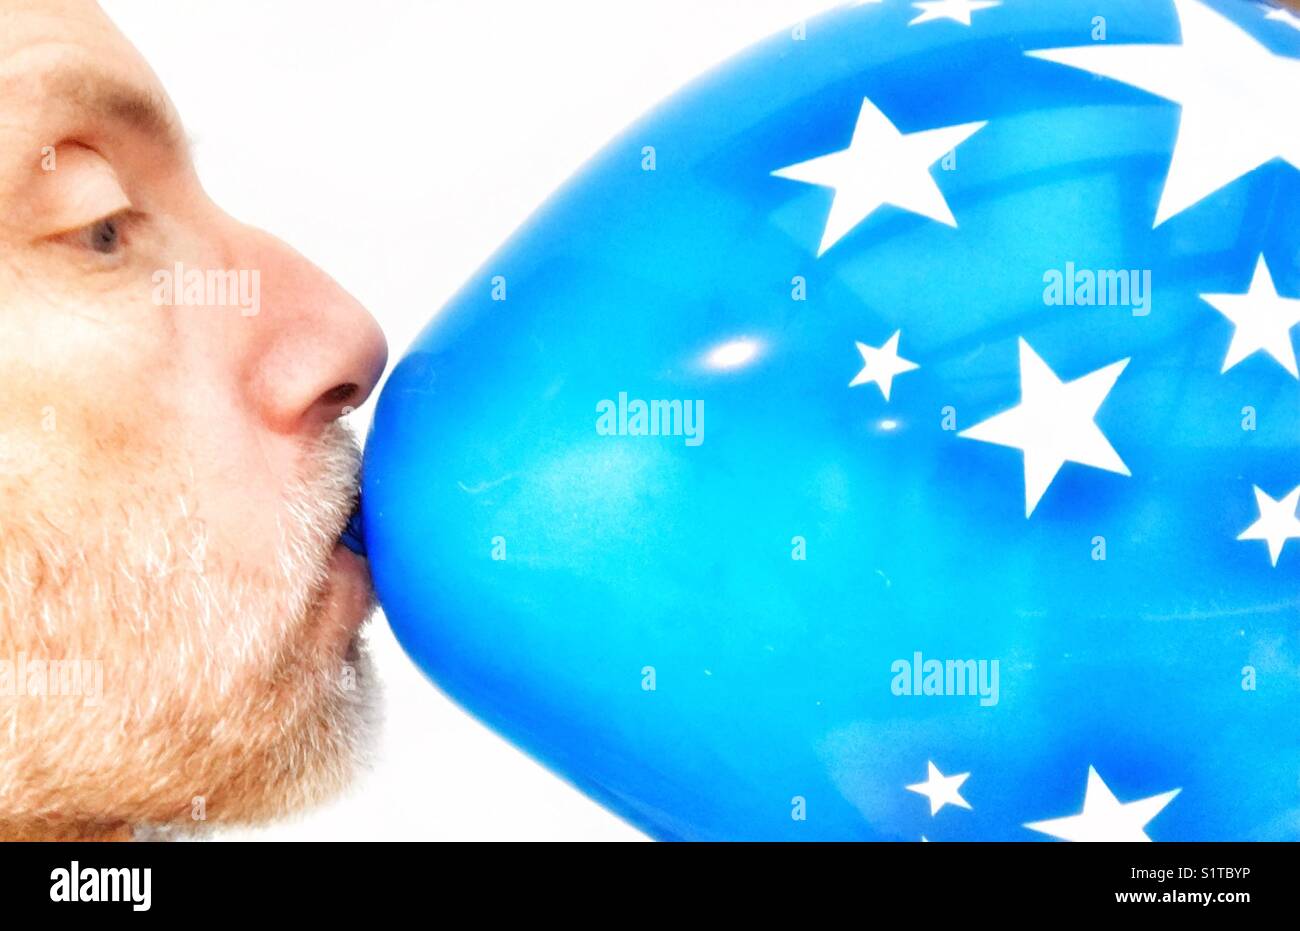 Im mittleren Alter Mann herauf weht eine blaue Ballon mit Stern Motiv Stockfoto